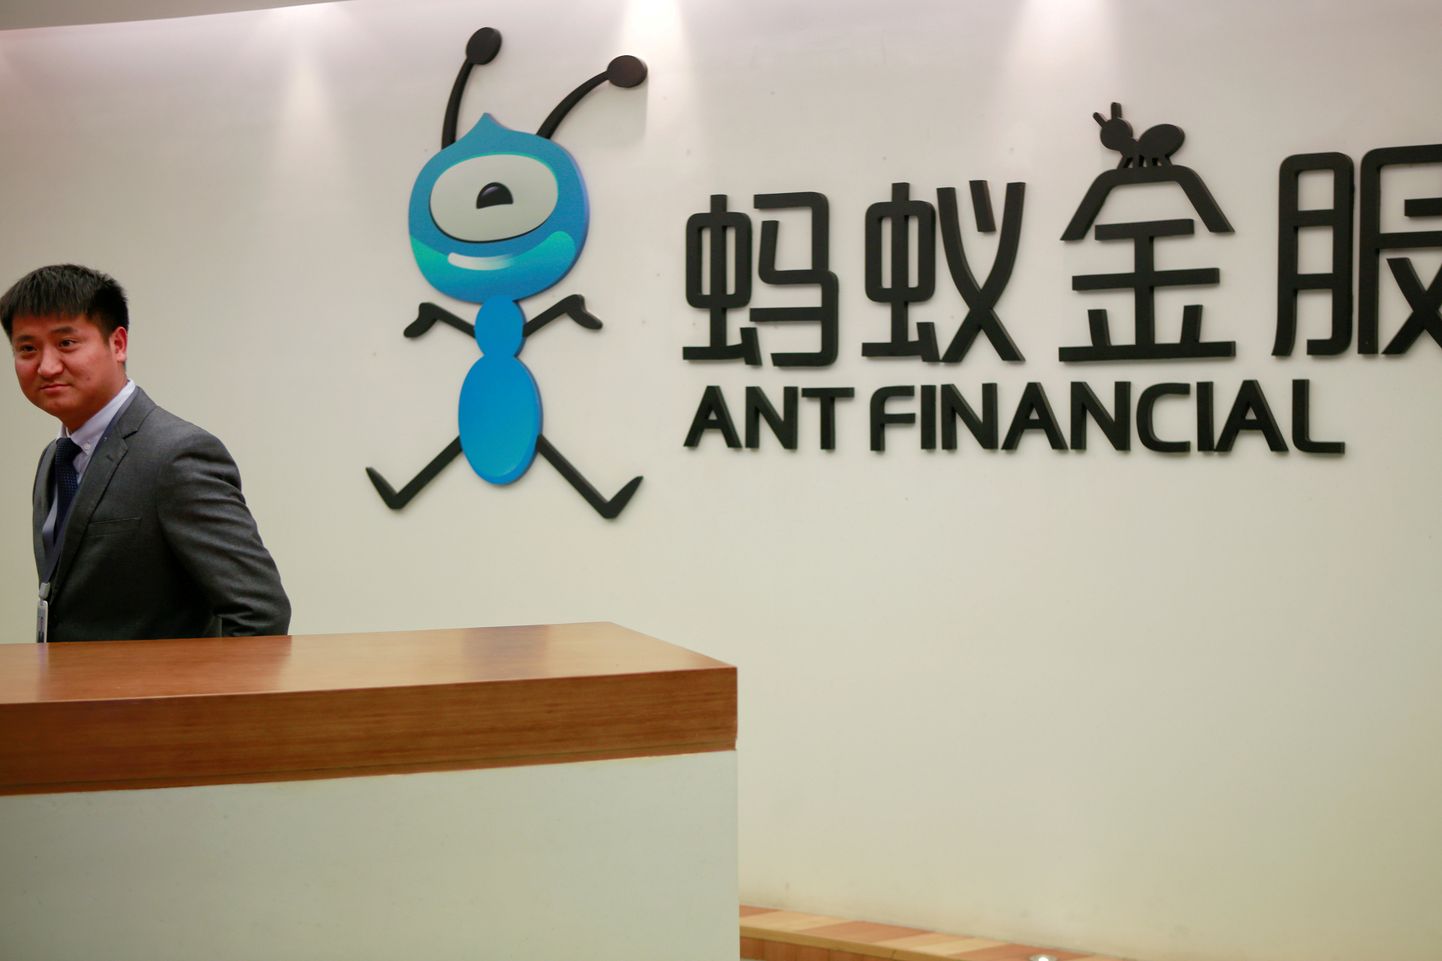 Ant Financial Services Groupi töötaja ettevõtte logo kõrval firma peakorteris Hangzhous.